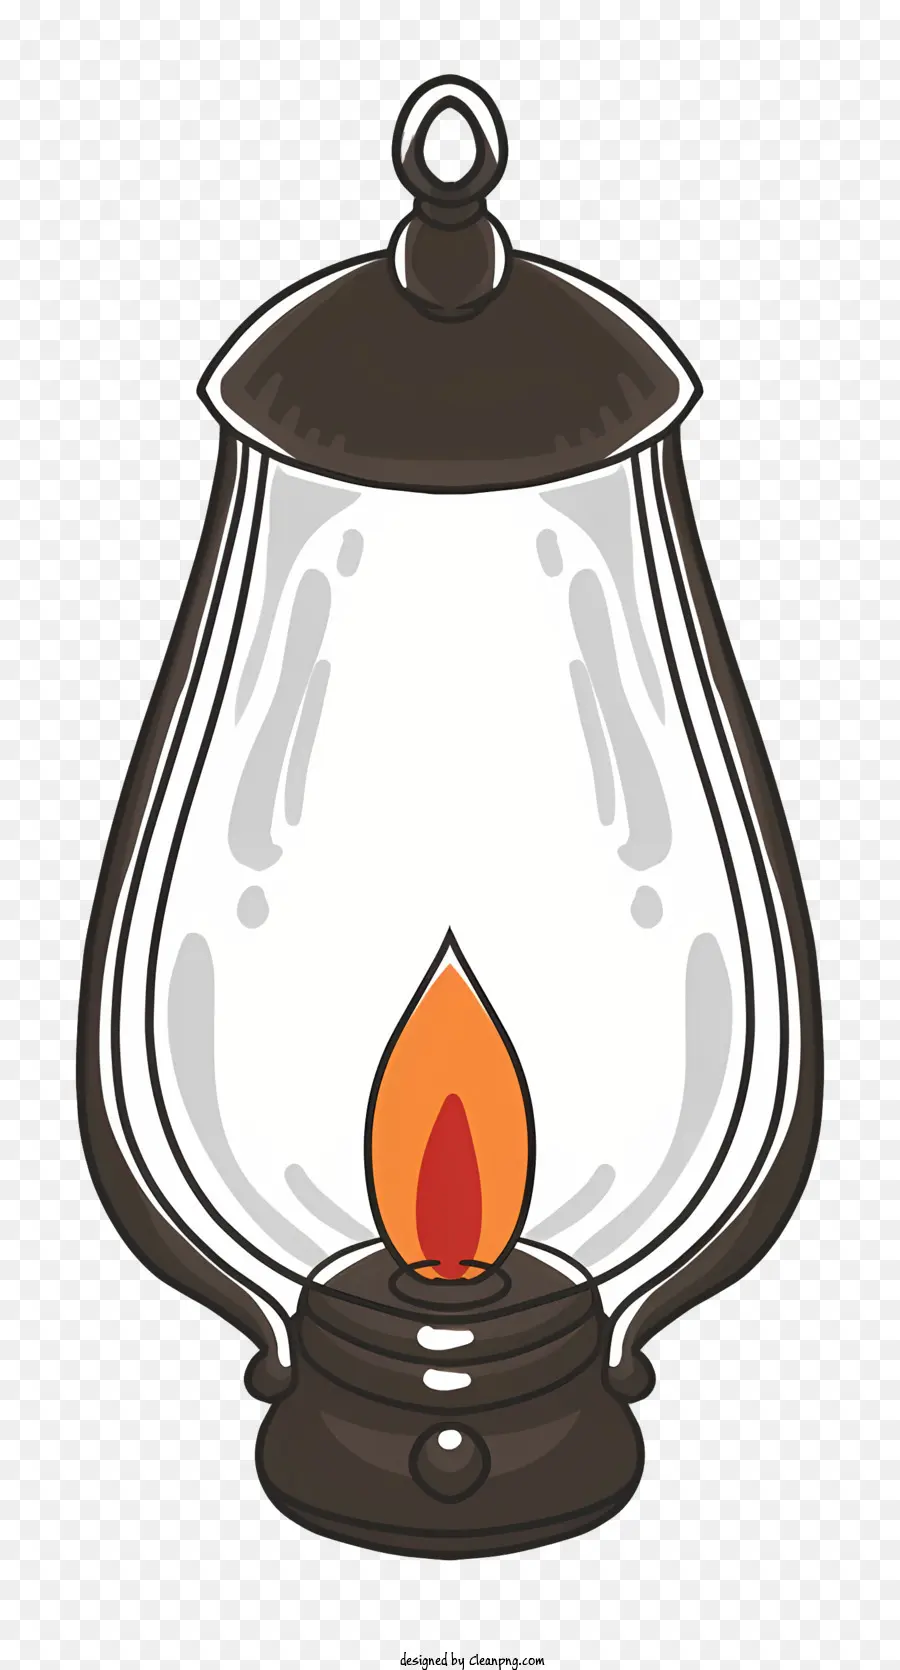 cornice in legno - Immagine semplice di una lanterna luminosa che simboleggia la tranquillità